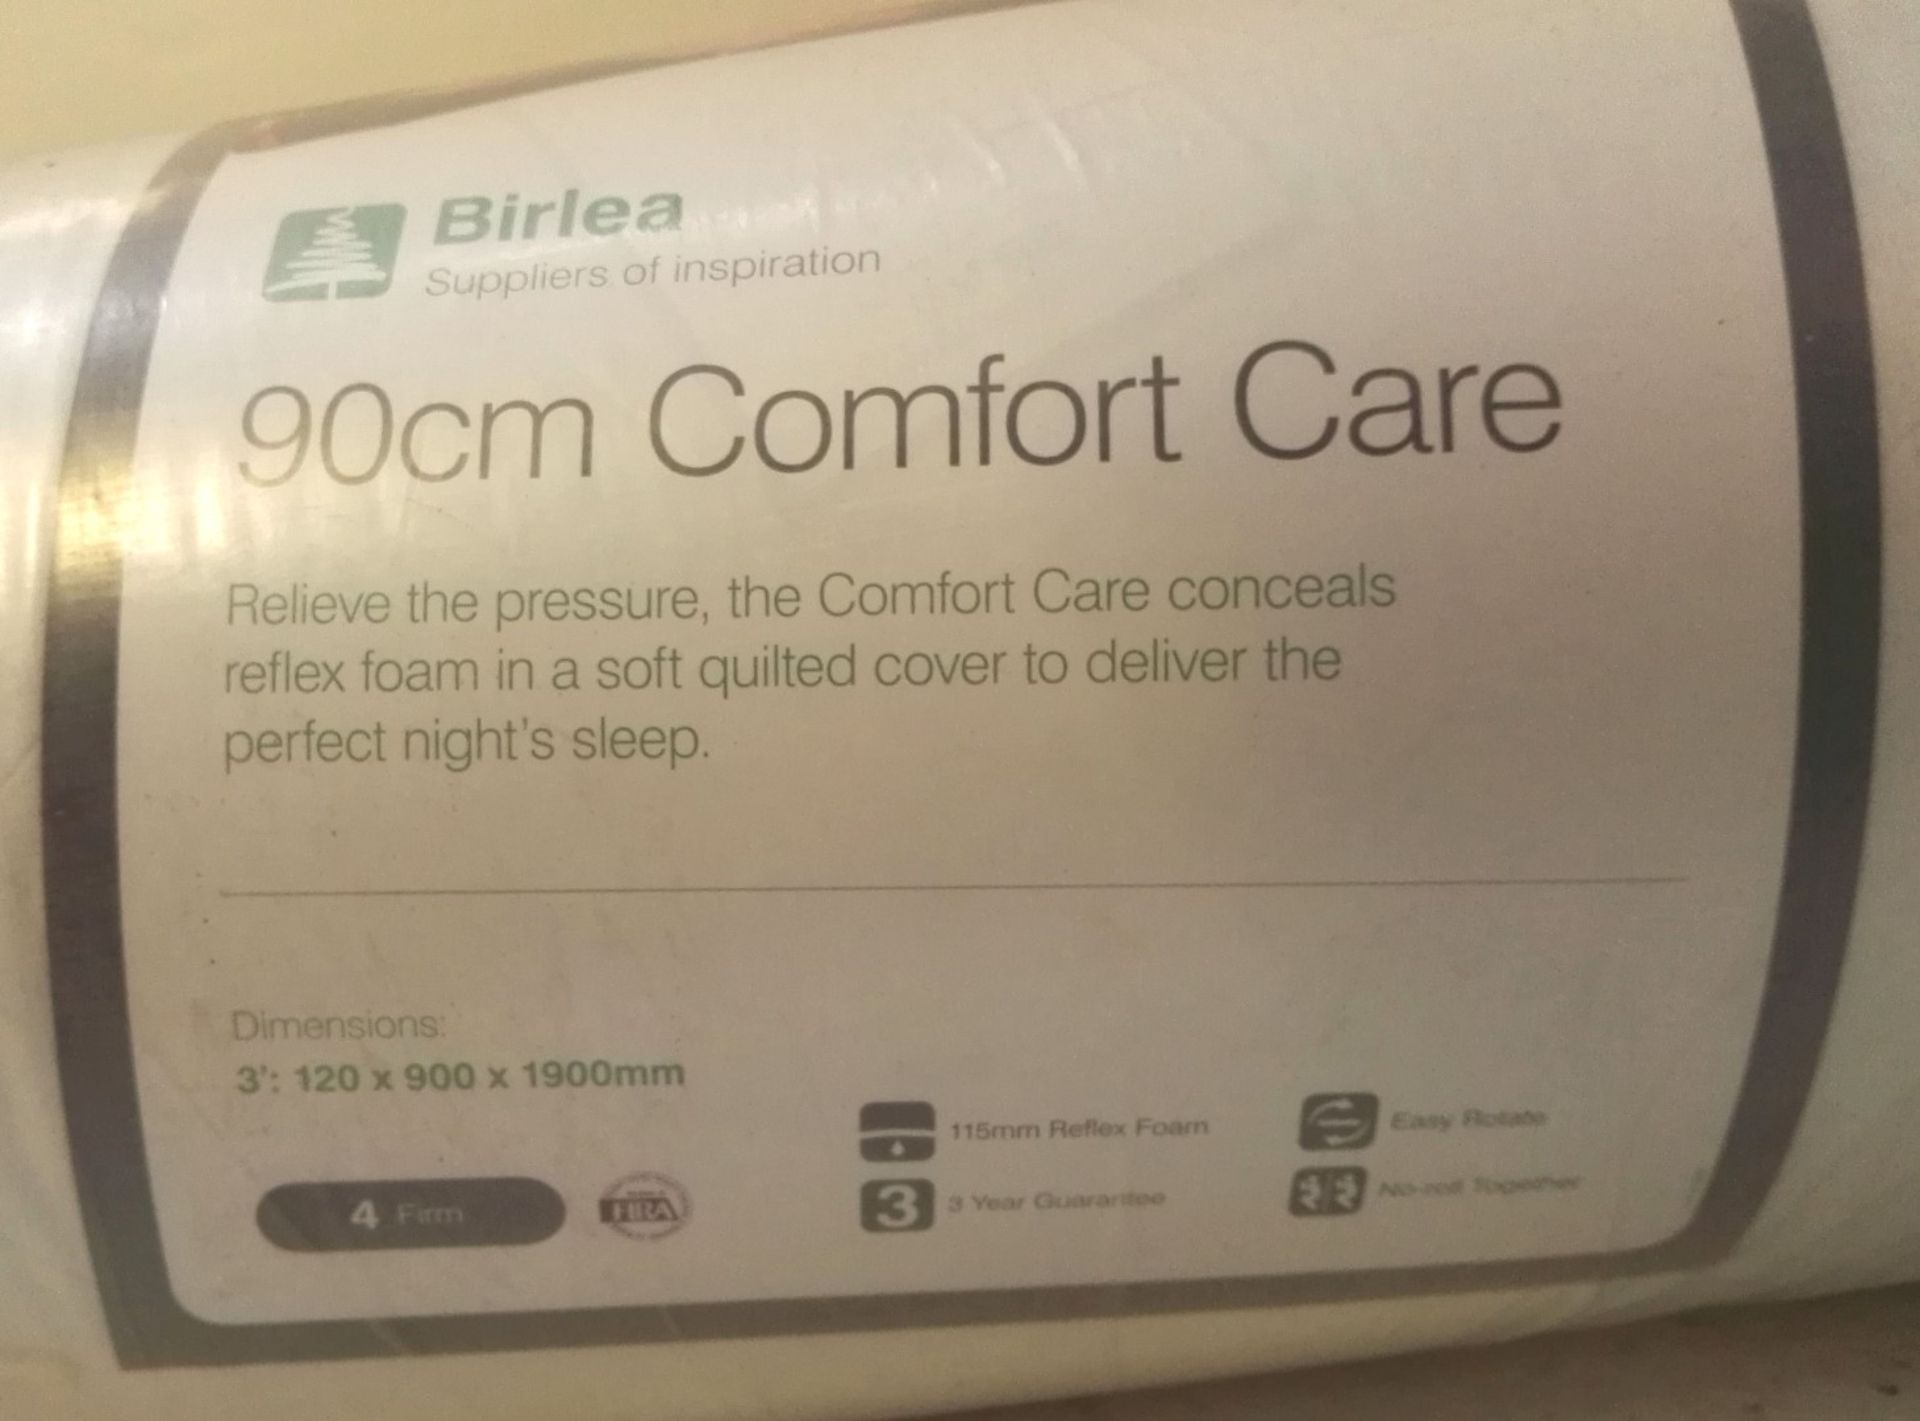 1 x Birlea 90cm Comfort Care Firm Rolled Up Reflex Foam Mattress - Brand New Stock - CL286 -